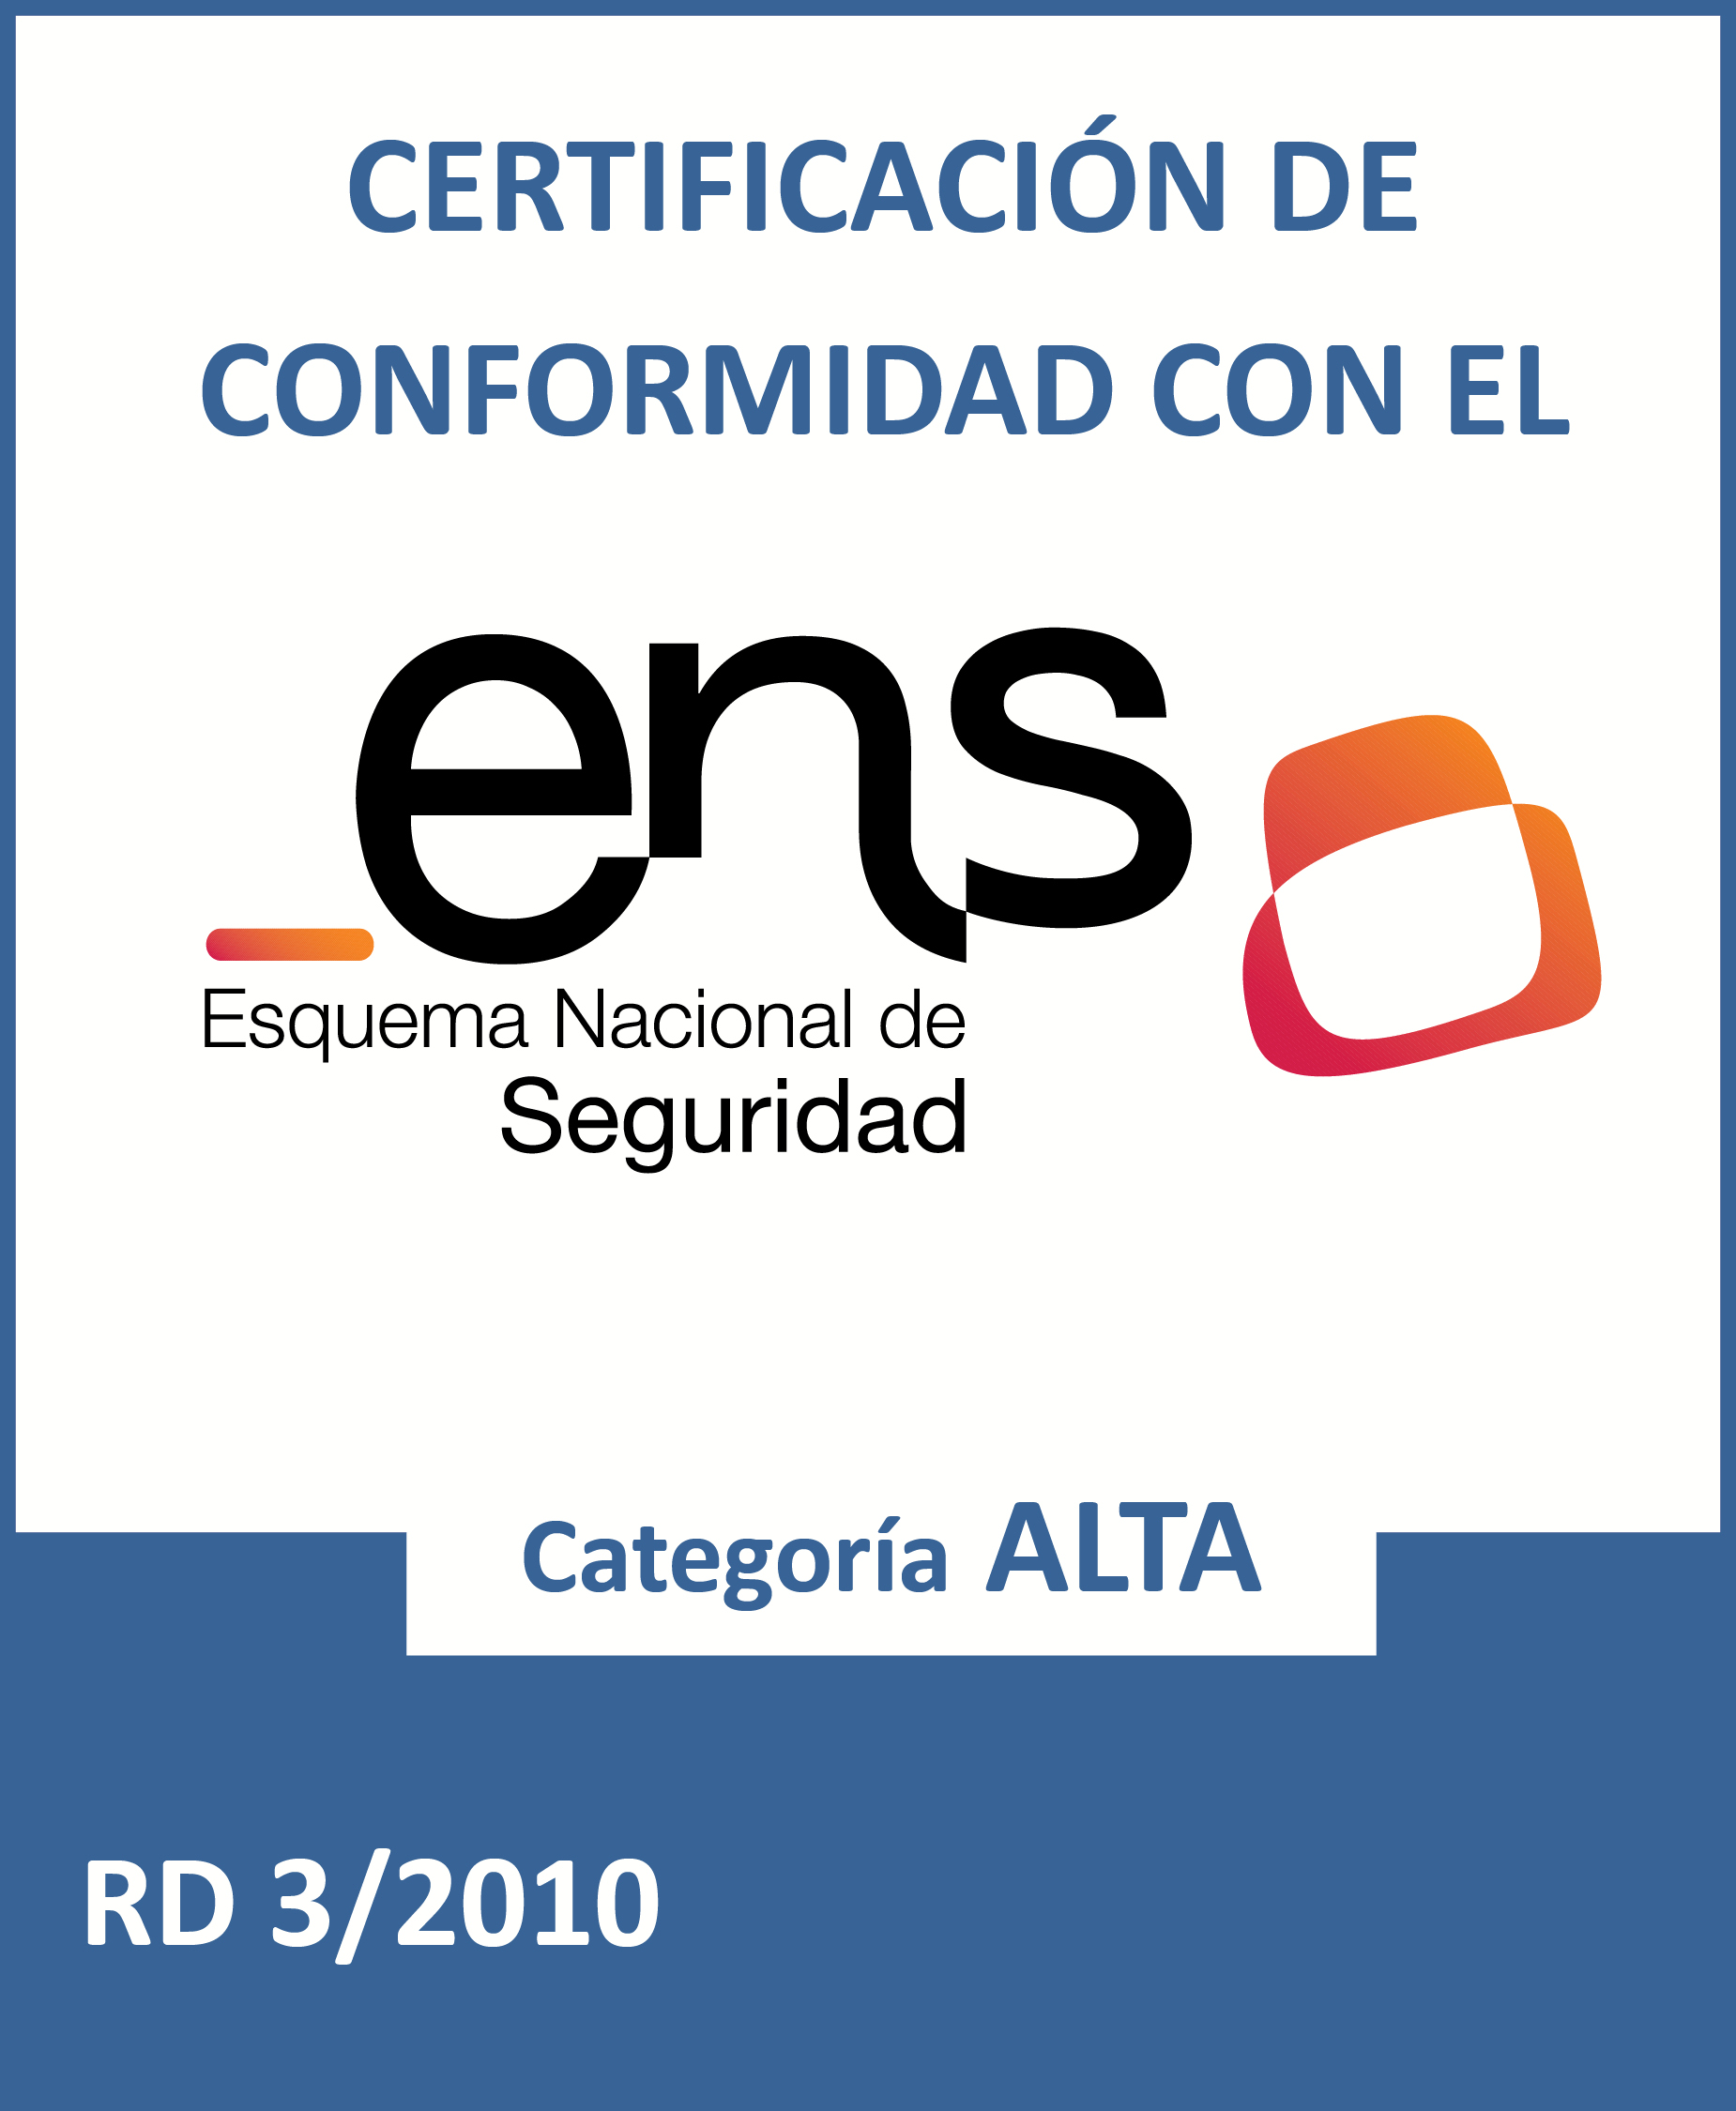 ENS - Certificado de Conformidad con el Esquema Nacional de Seguridad - Categoría Alta (Abre nueva ventana)